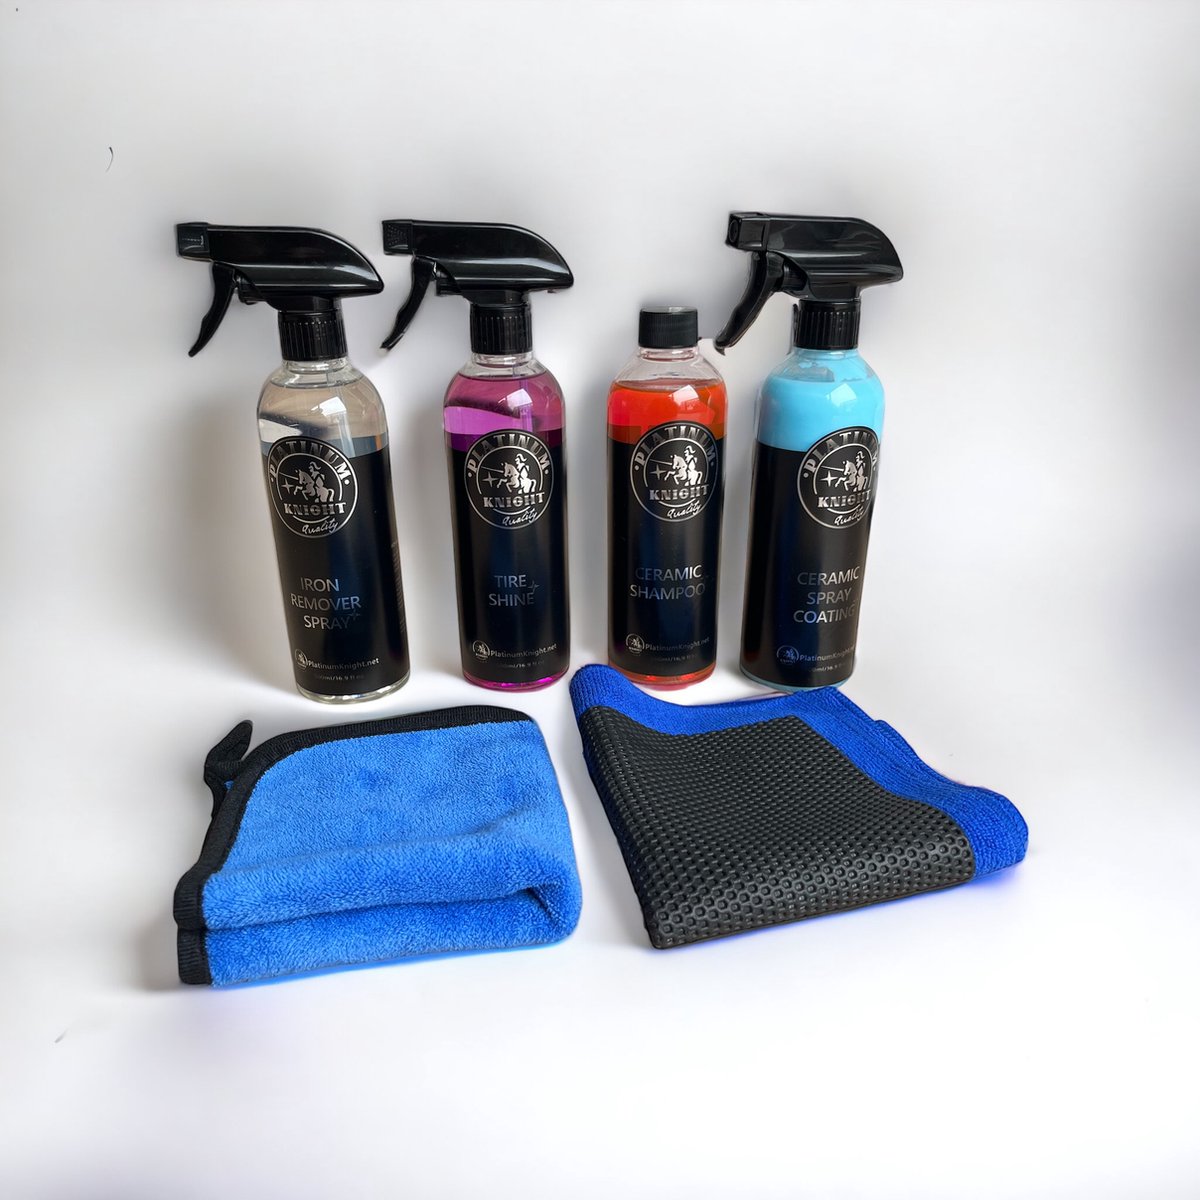 Full 6/1 package - Platinum Pro Series - includes spray Coating - Ceramic Shampoo - Iron Remover spray - 3D clay towel - NEW!!! Tire Shine - Combi pakket - Voor een glimmende auto met een diepe glans!! - Met gratis microfiber doek!!!